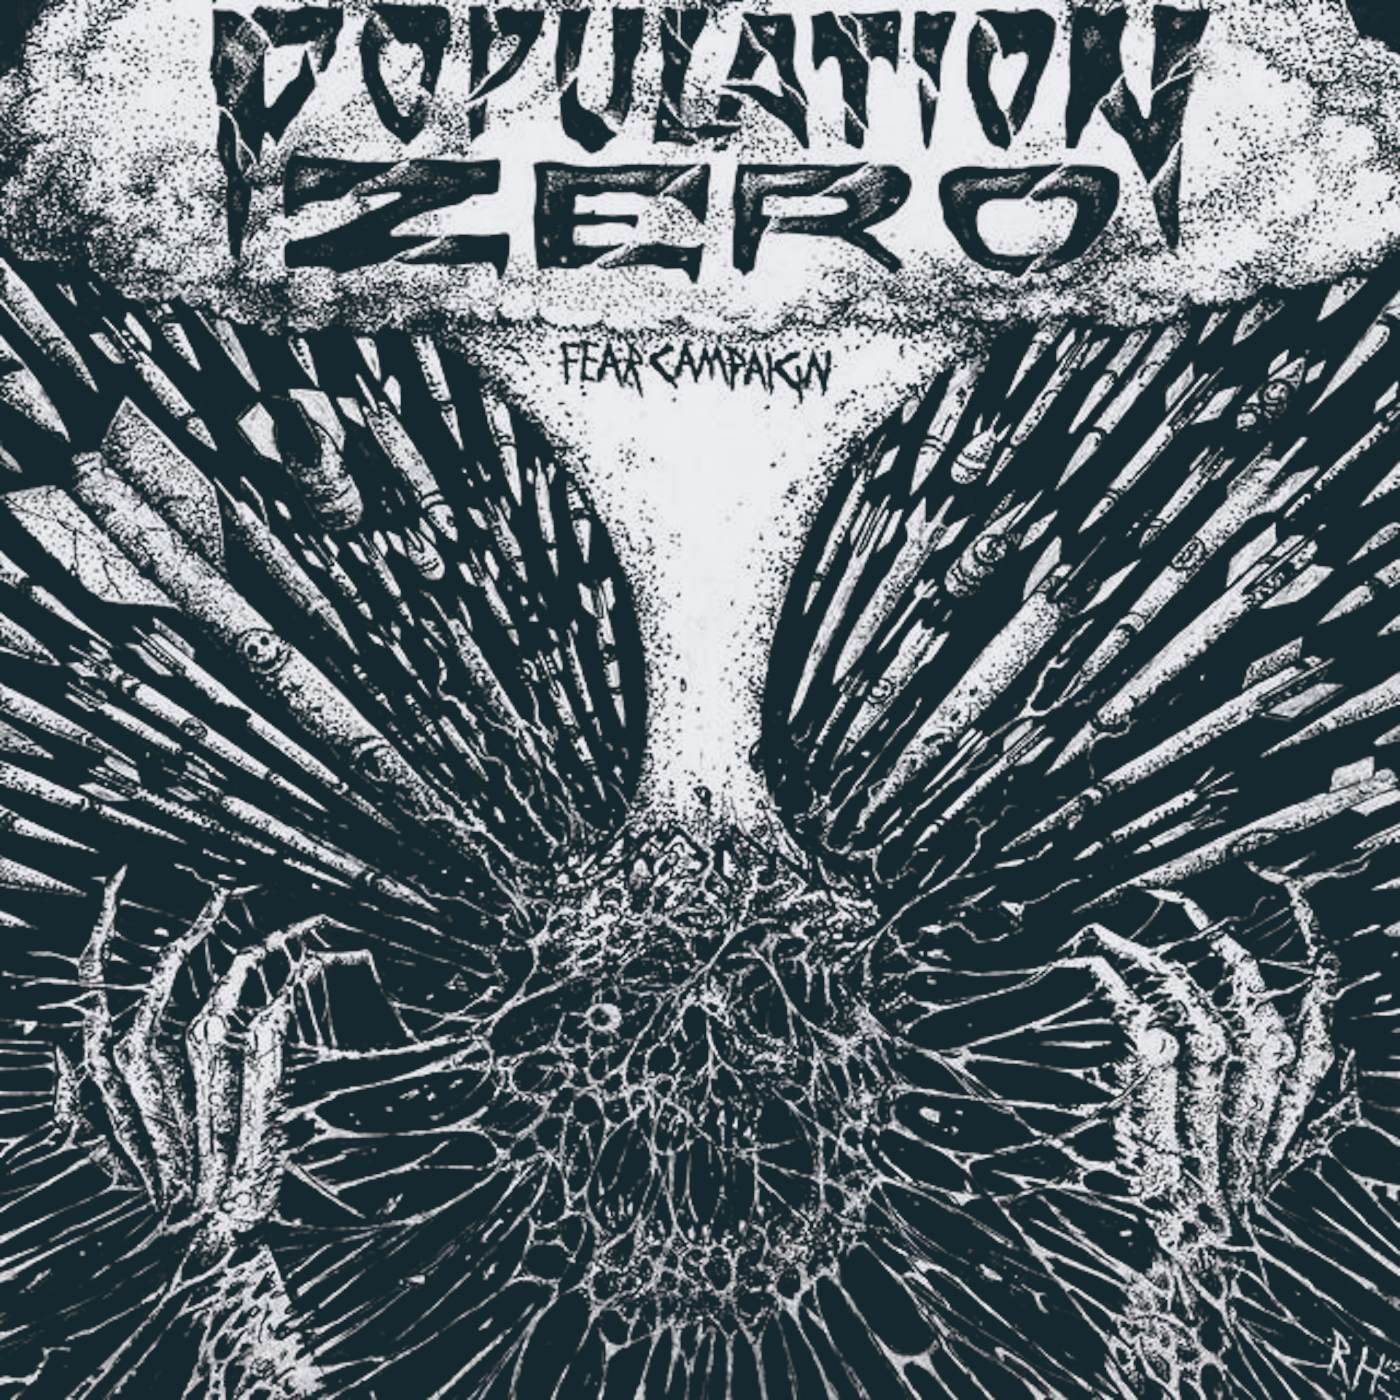 Population Zero